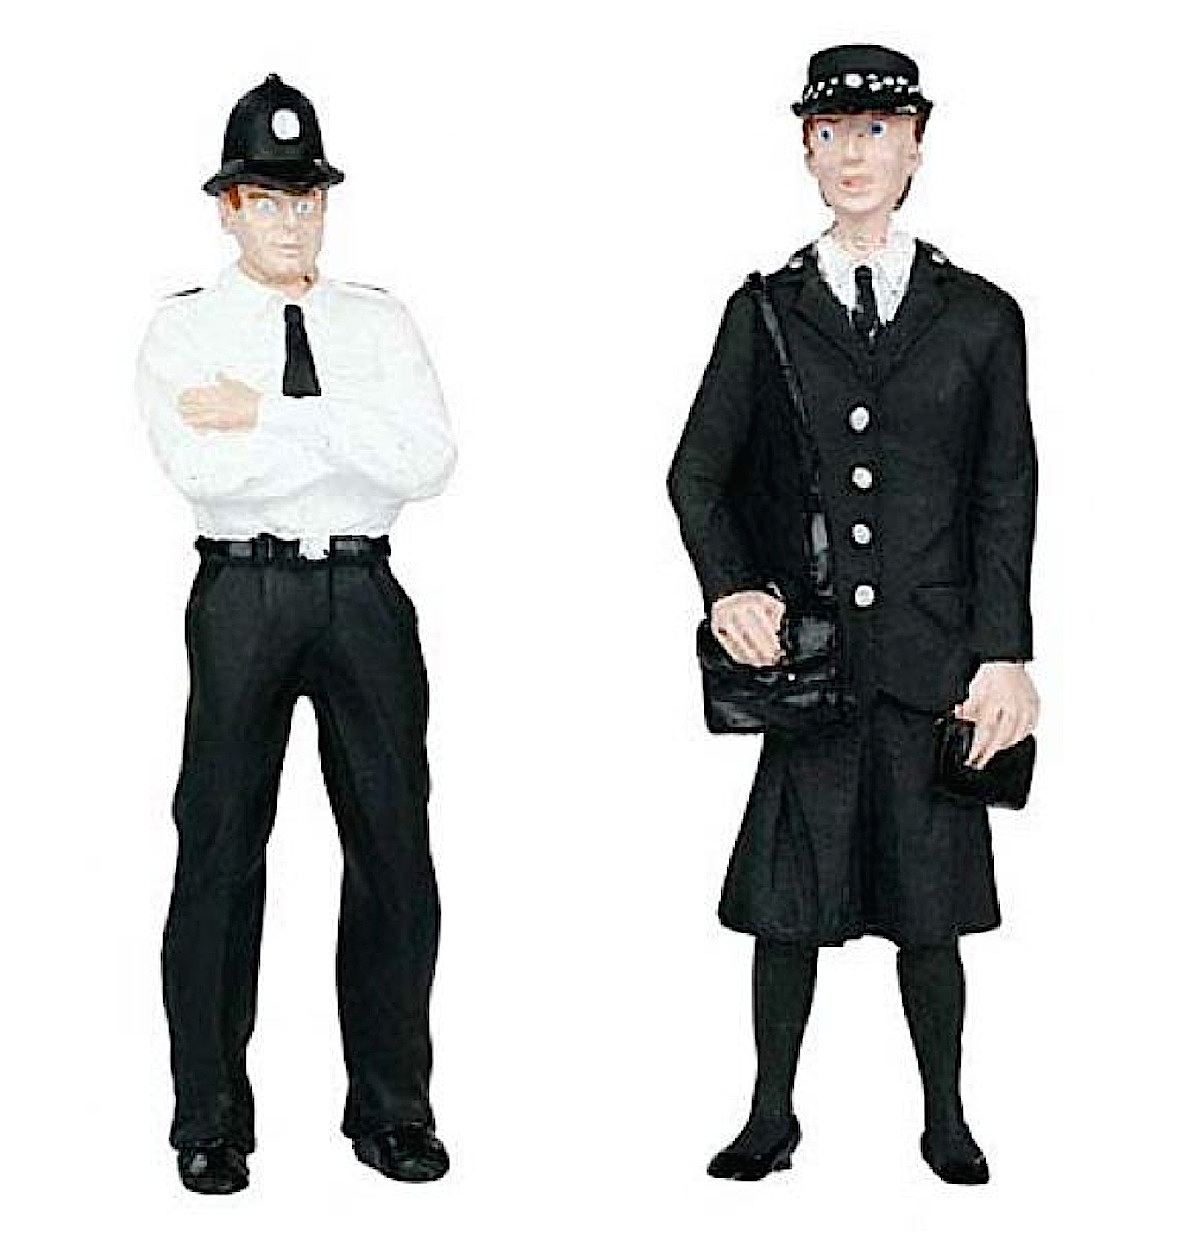 Polizei und Sicherheitspersonal (Police and Security Staff)